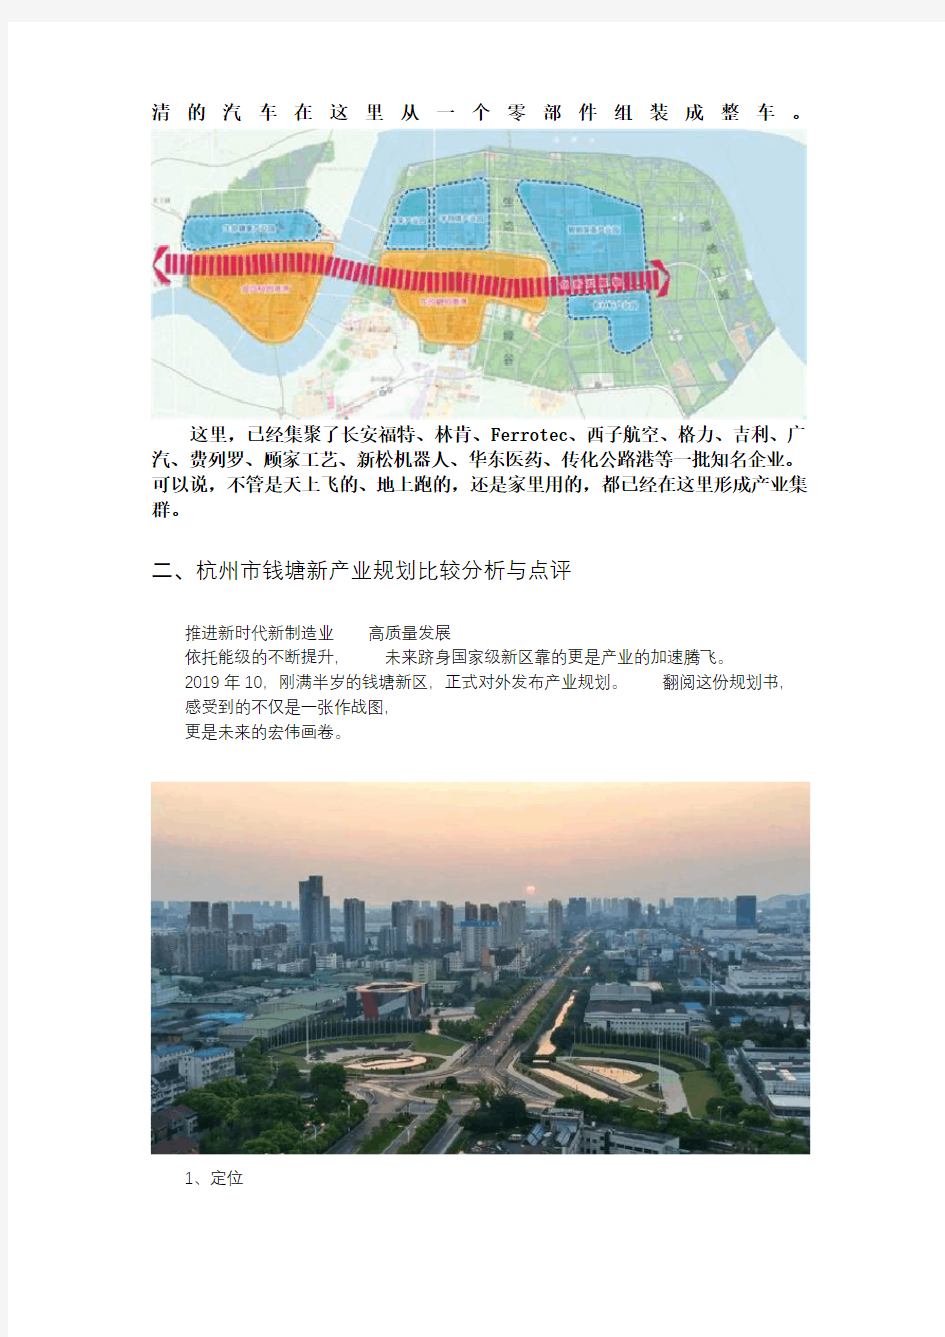 杭州钱塘新区十四五产业规划新蓝图点评